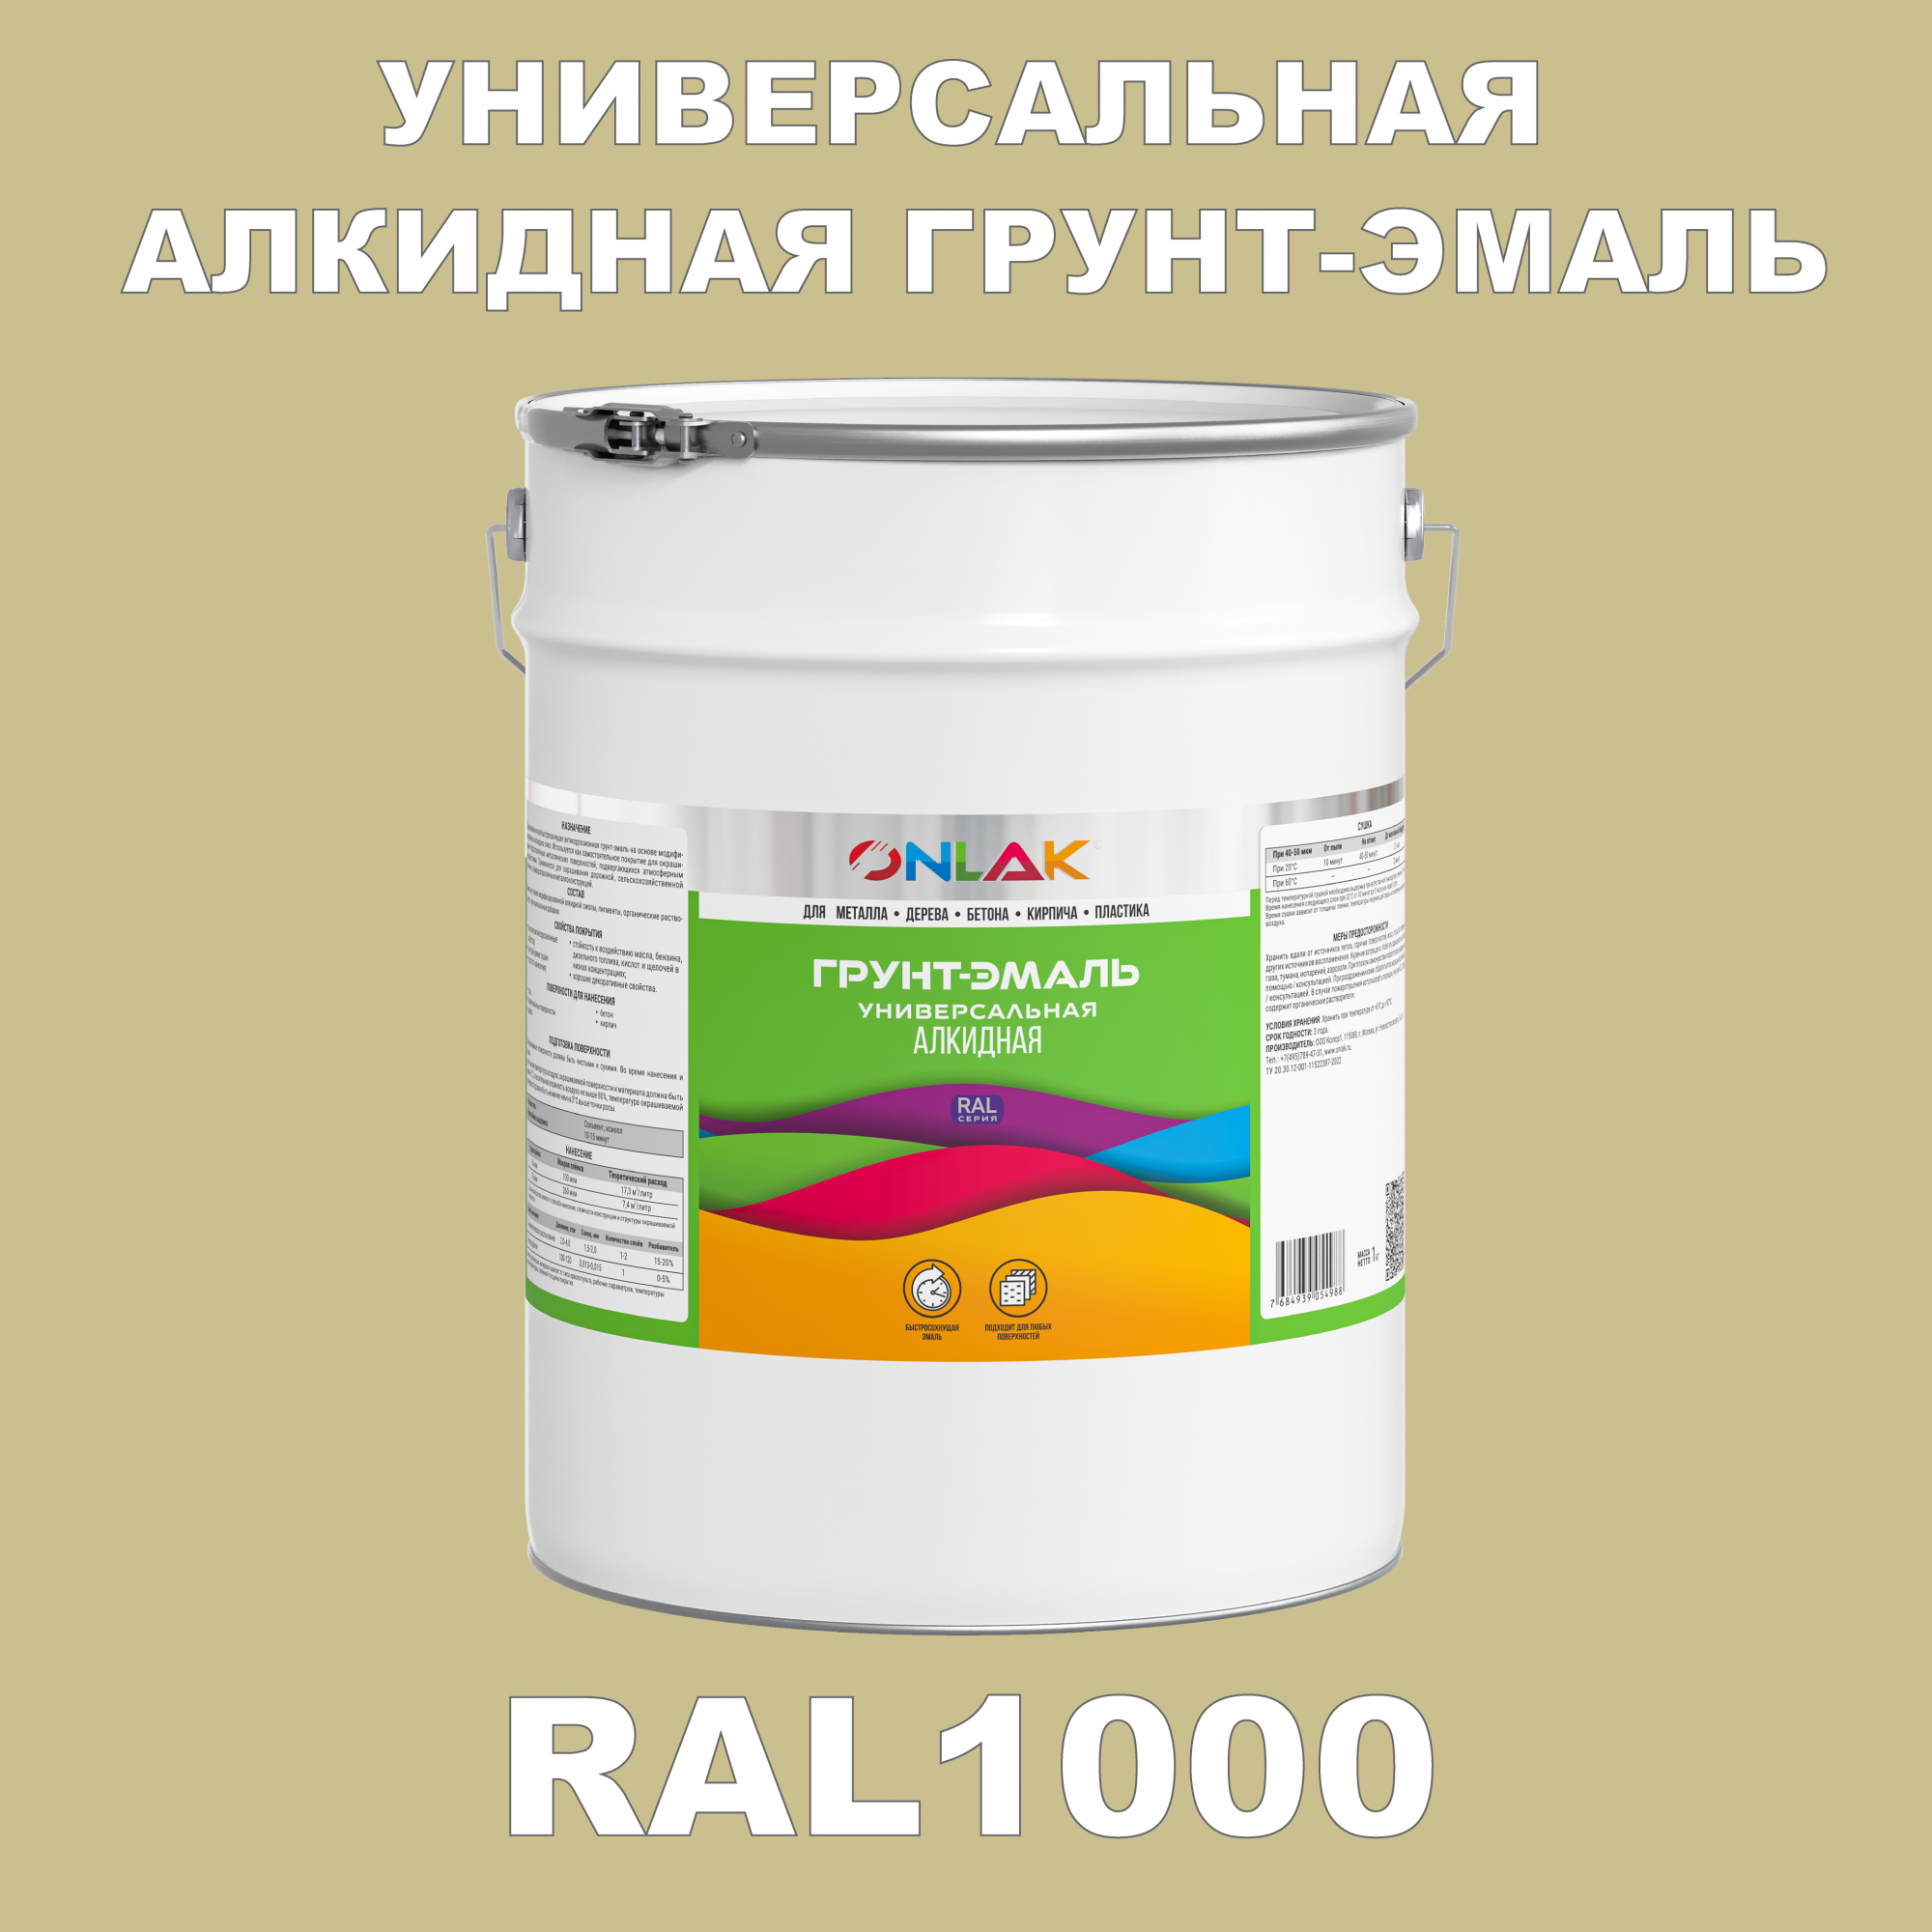 Грунт-эмаль ONLAK 1К RAL1000 антикоррозионная алкидная по металлу по ржавчине 20 кг грунт эмаль аэрозольная престиж 3в1 алкидная коричневая ral 8017 425 мл 0 425 кг